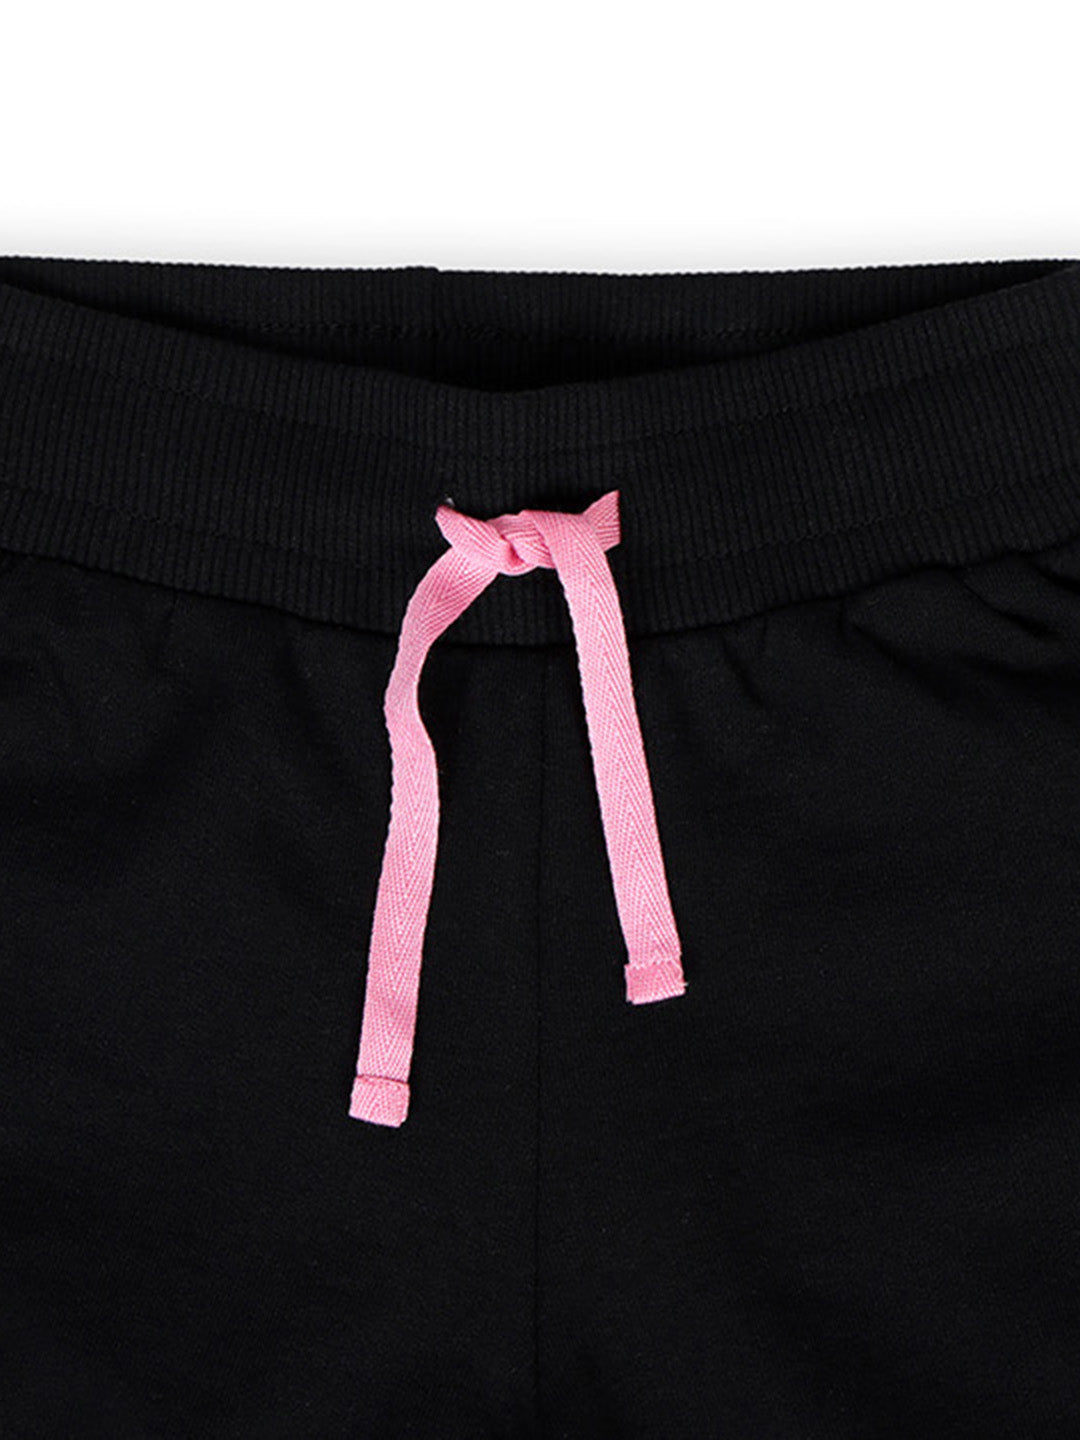 TWGE - Kids Shorts for Girls - Short Pants - Printed Regular Fit Half Pants - Color Black